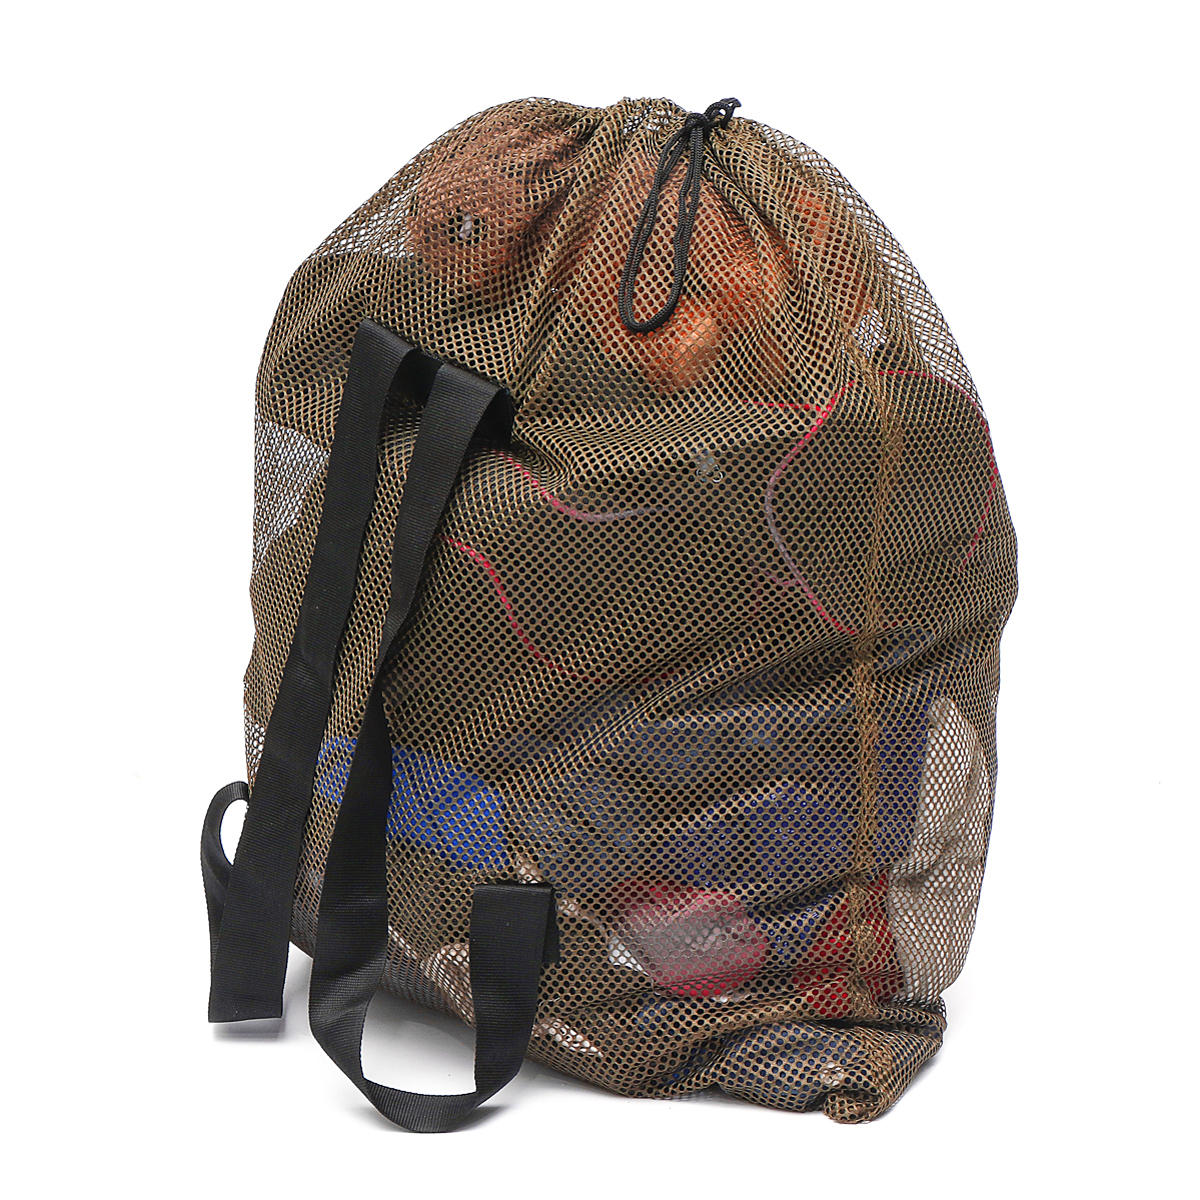 Tactische mesh-net schoudertas voor buitenactiviteiten zoals kamperen, jagen en opslag van eendenvoer.